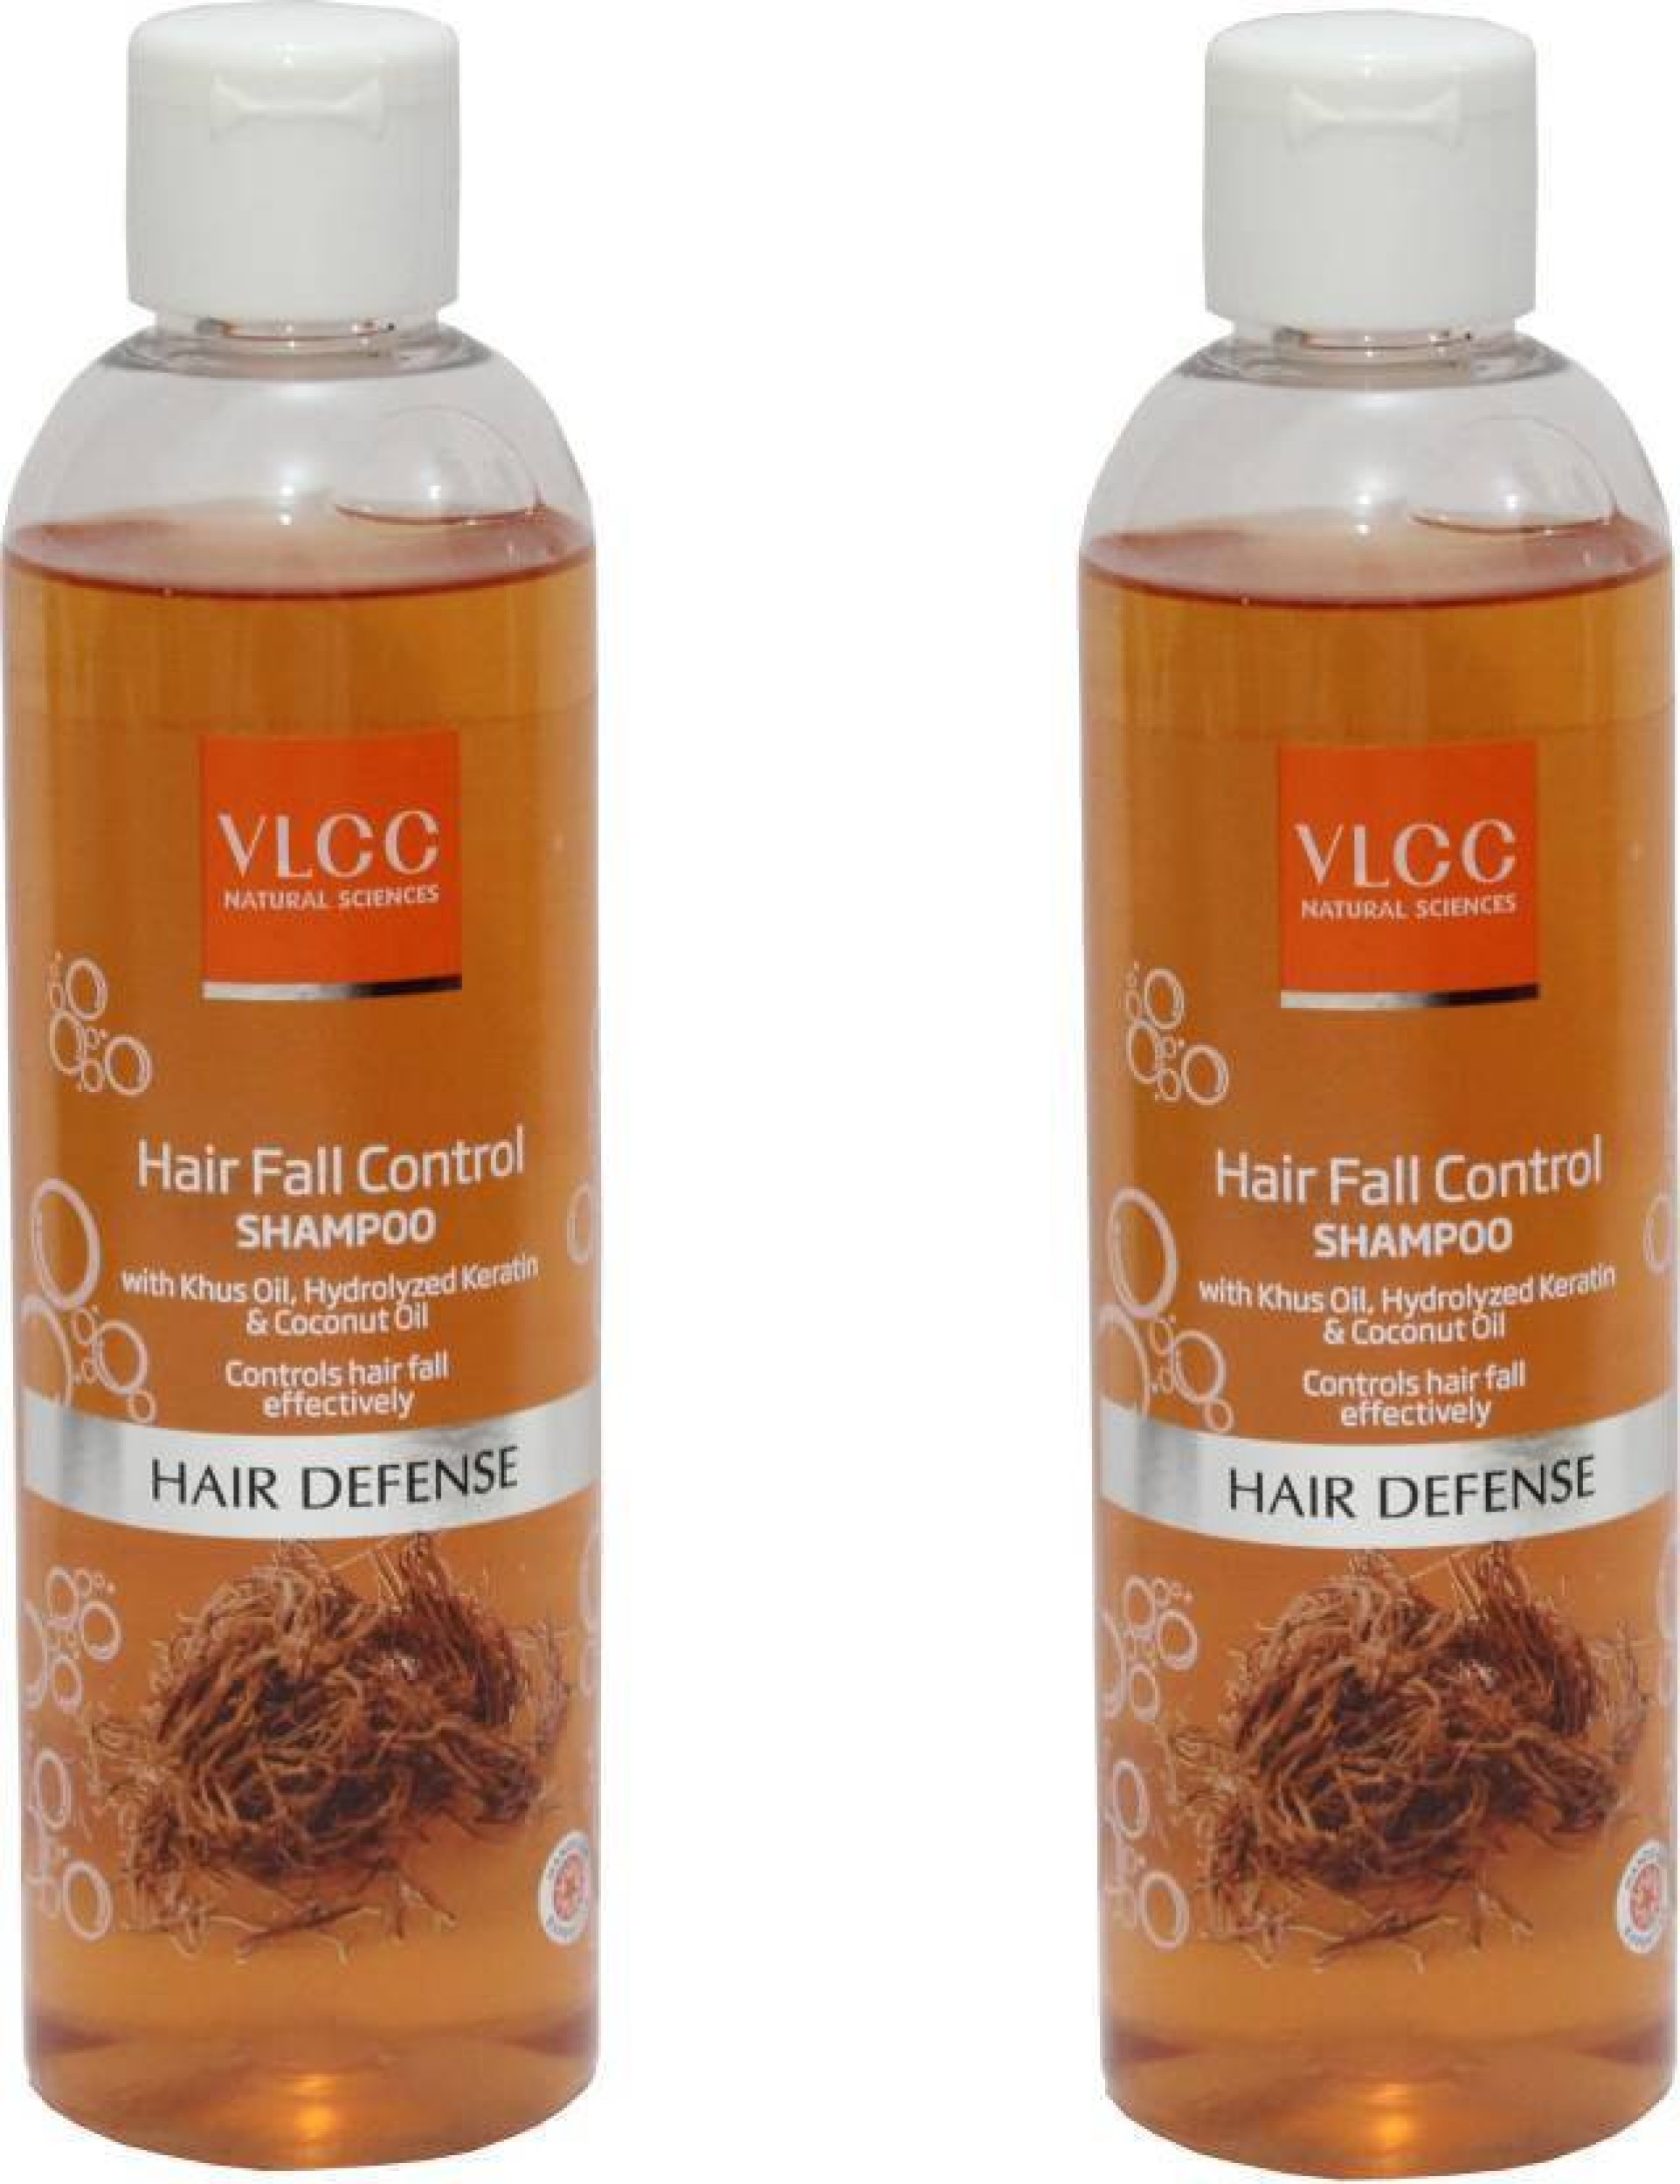 VLCC Hair Fall Repair Oil Review